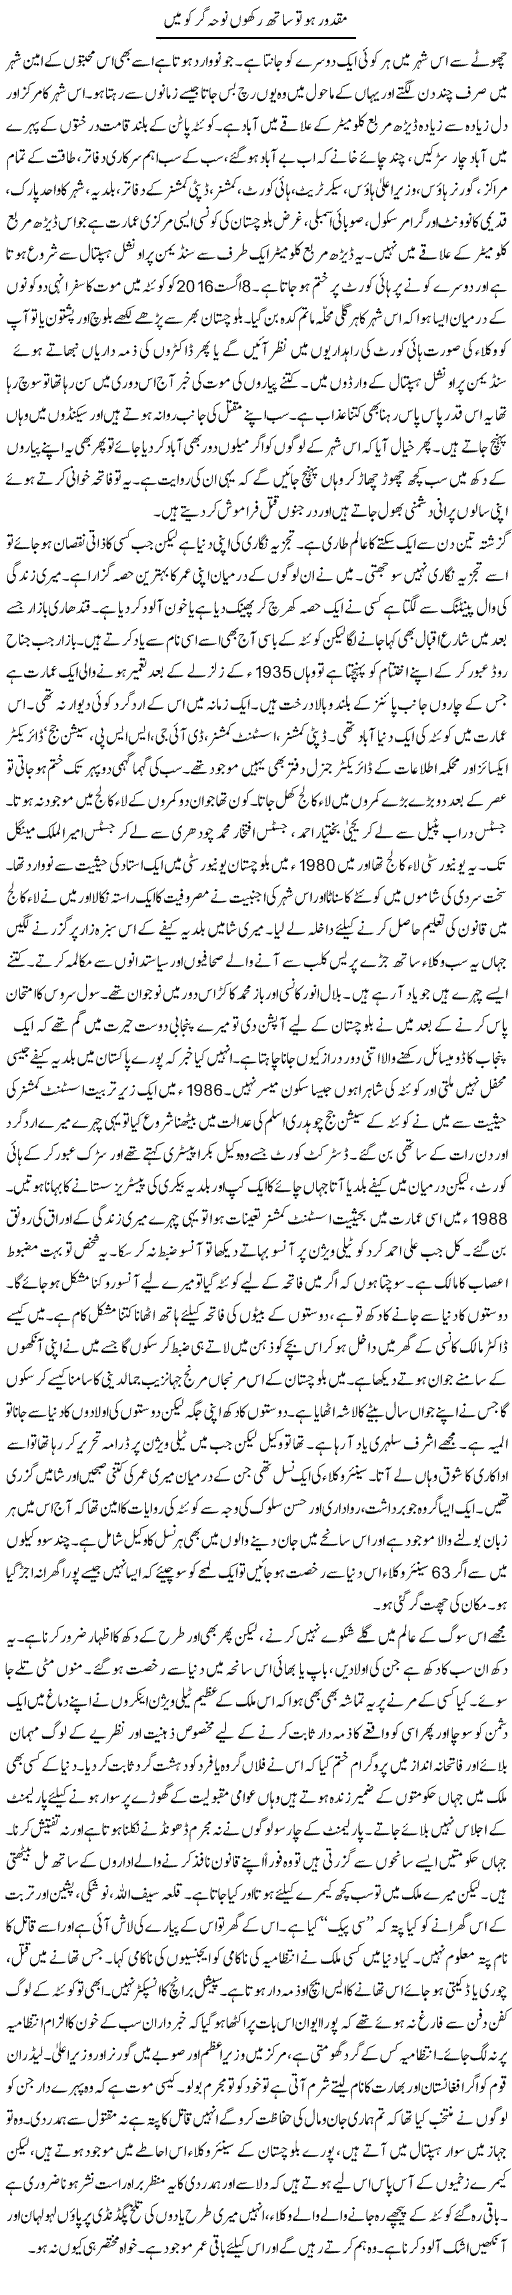 Maqdoor ho to sath rakhoon noha gar ko main | Orya Maqbool Jan | Daily Urdu Columns